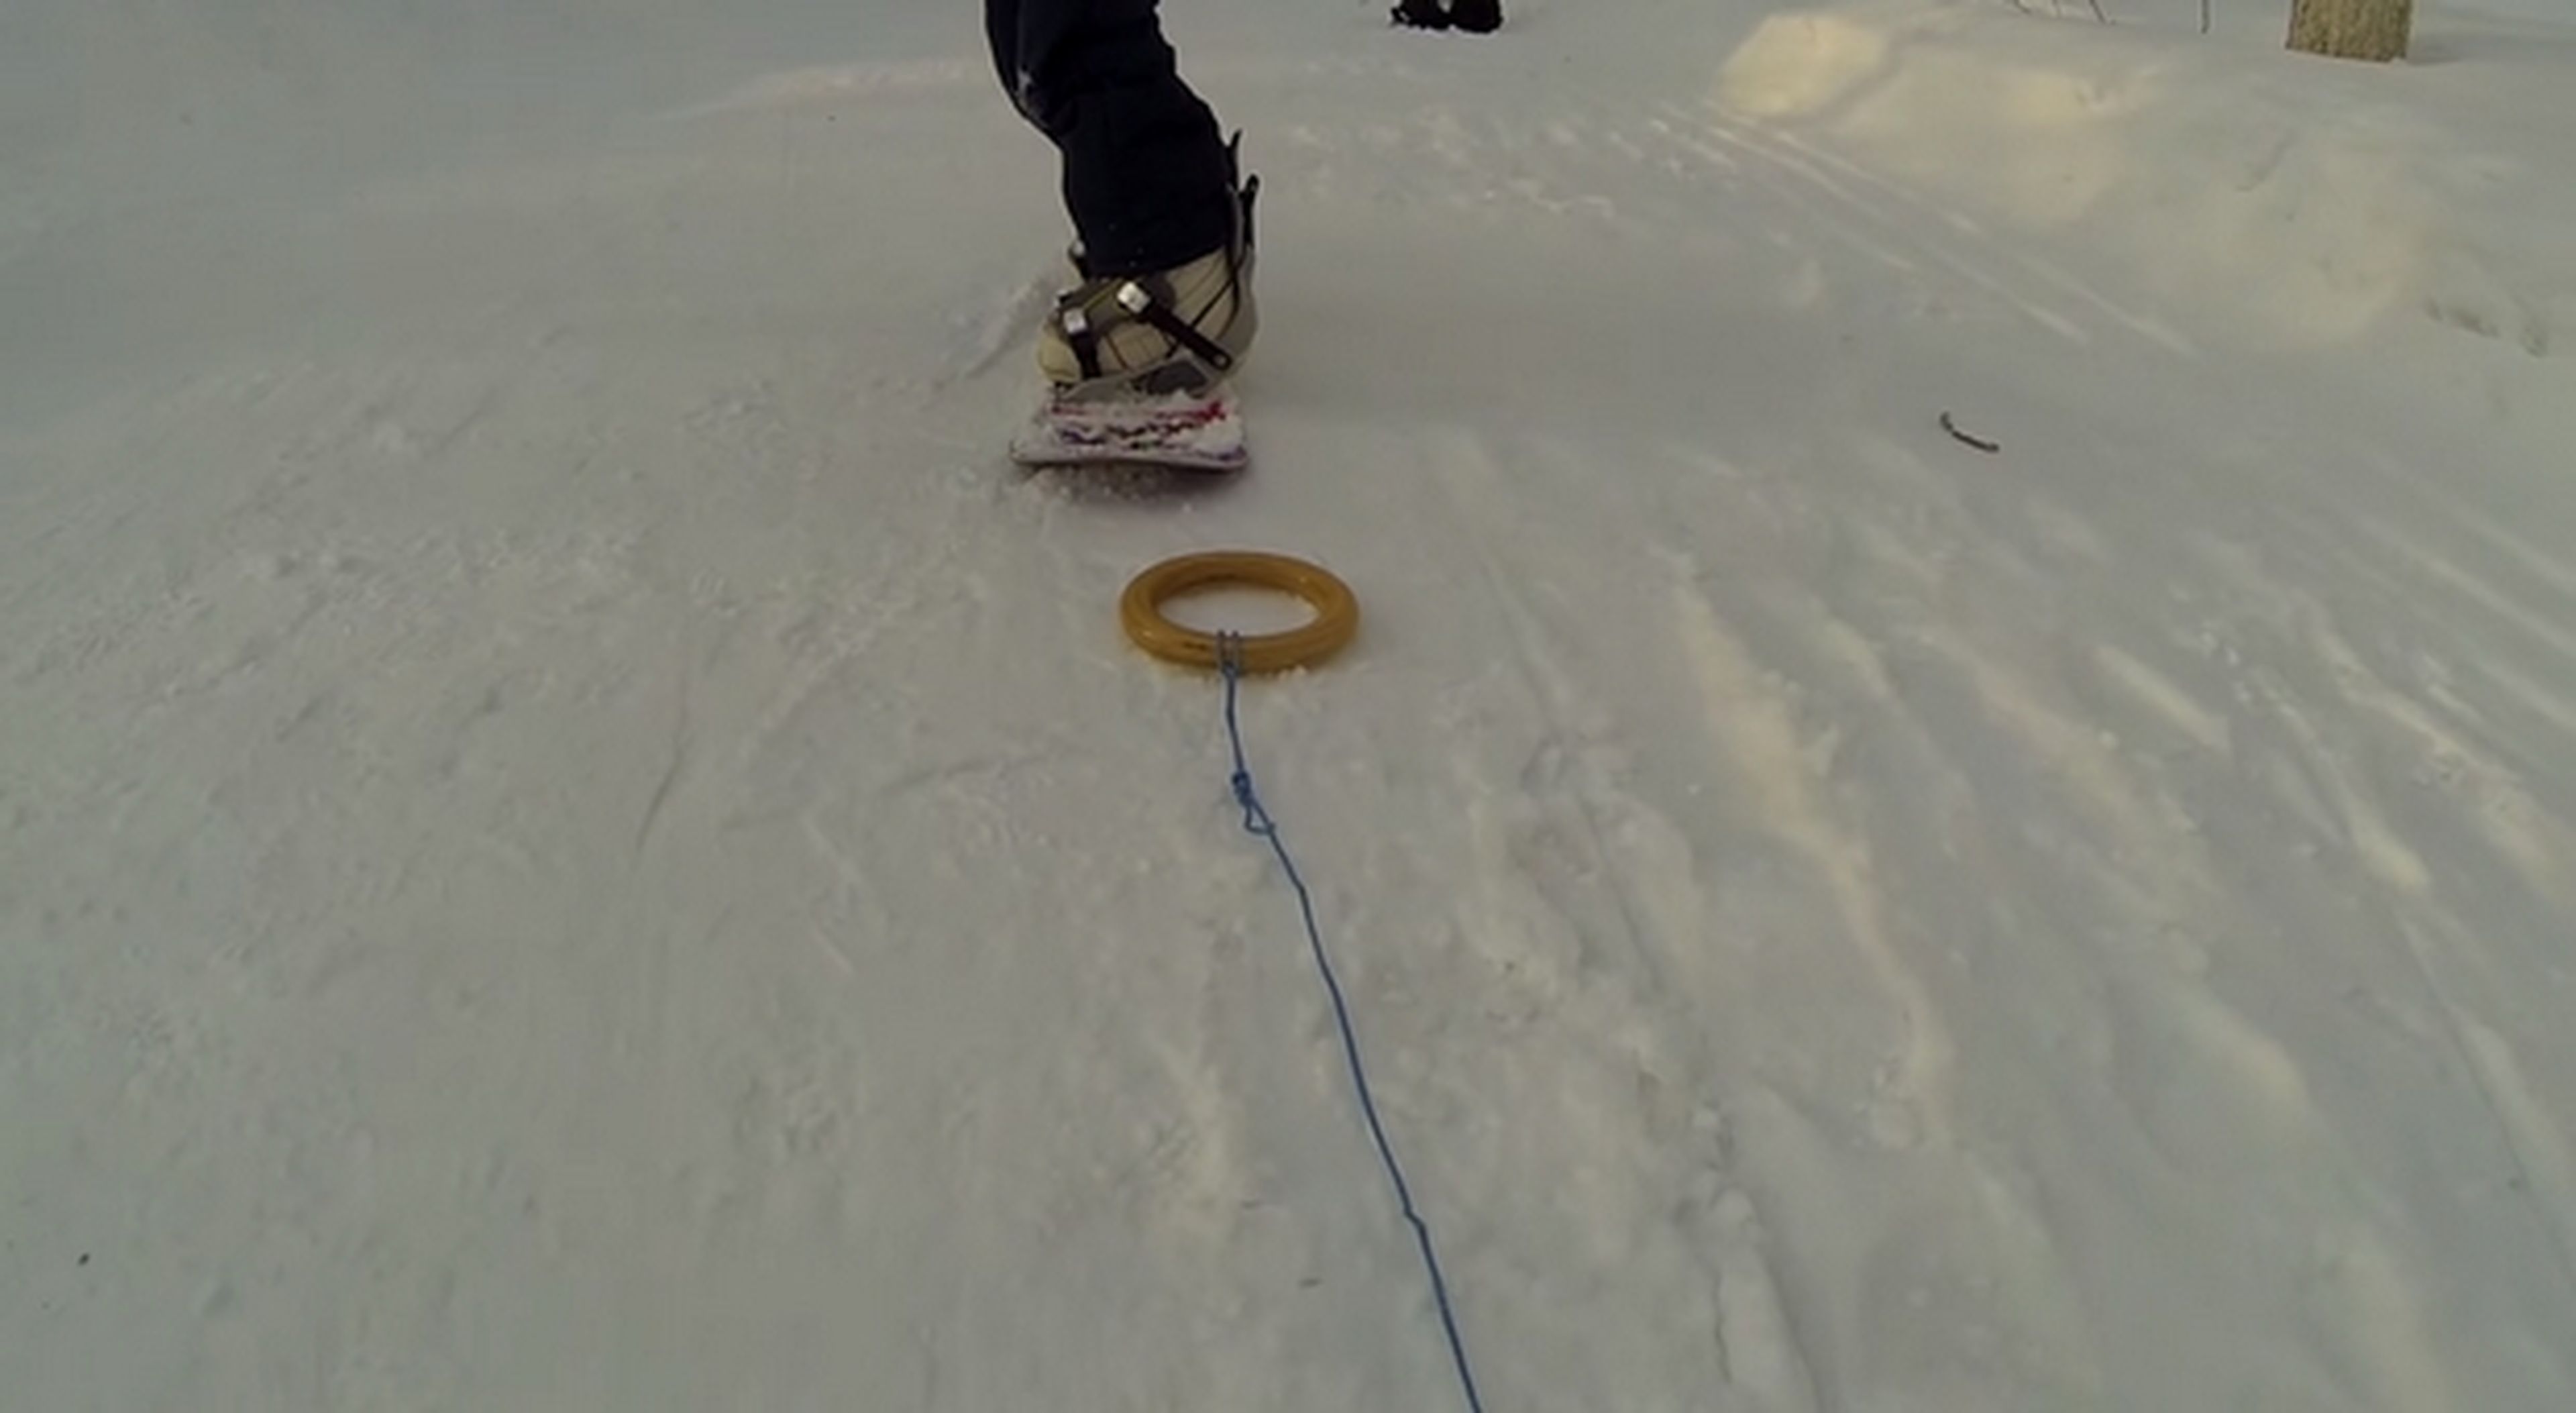 Llega el Droneboarding, tablas de snowboard impulsadas por un drone